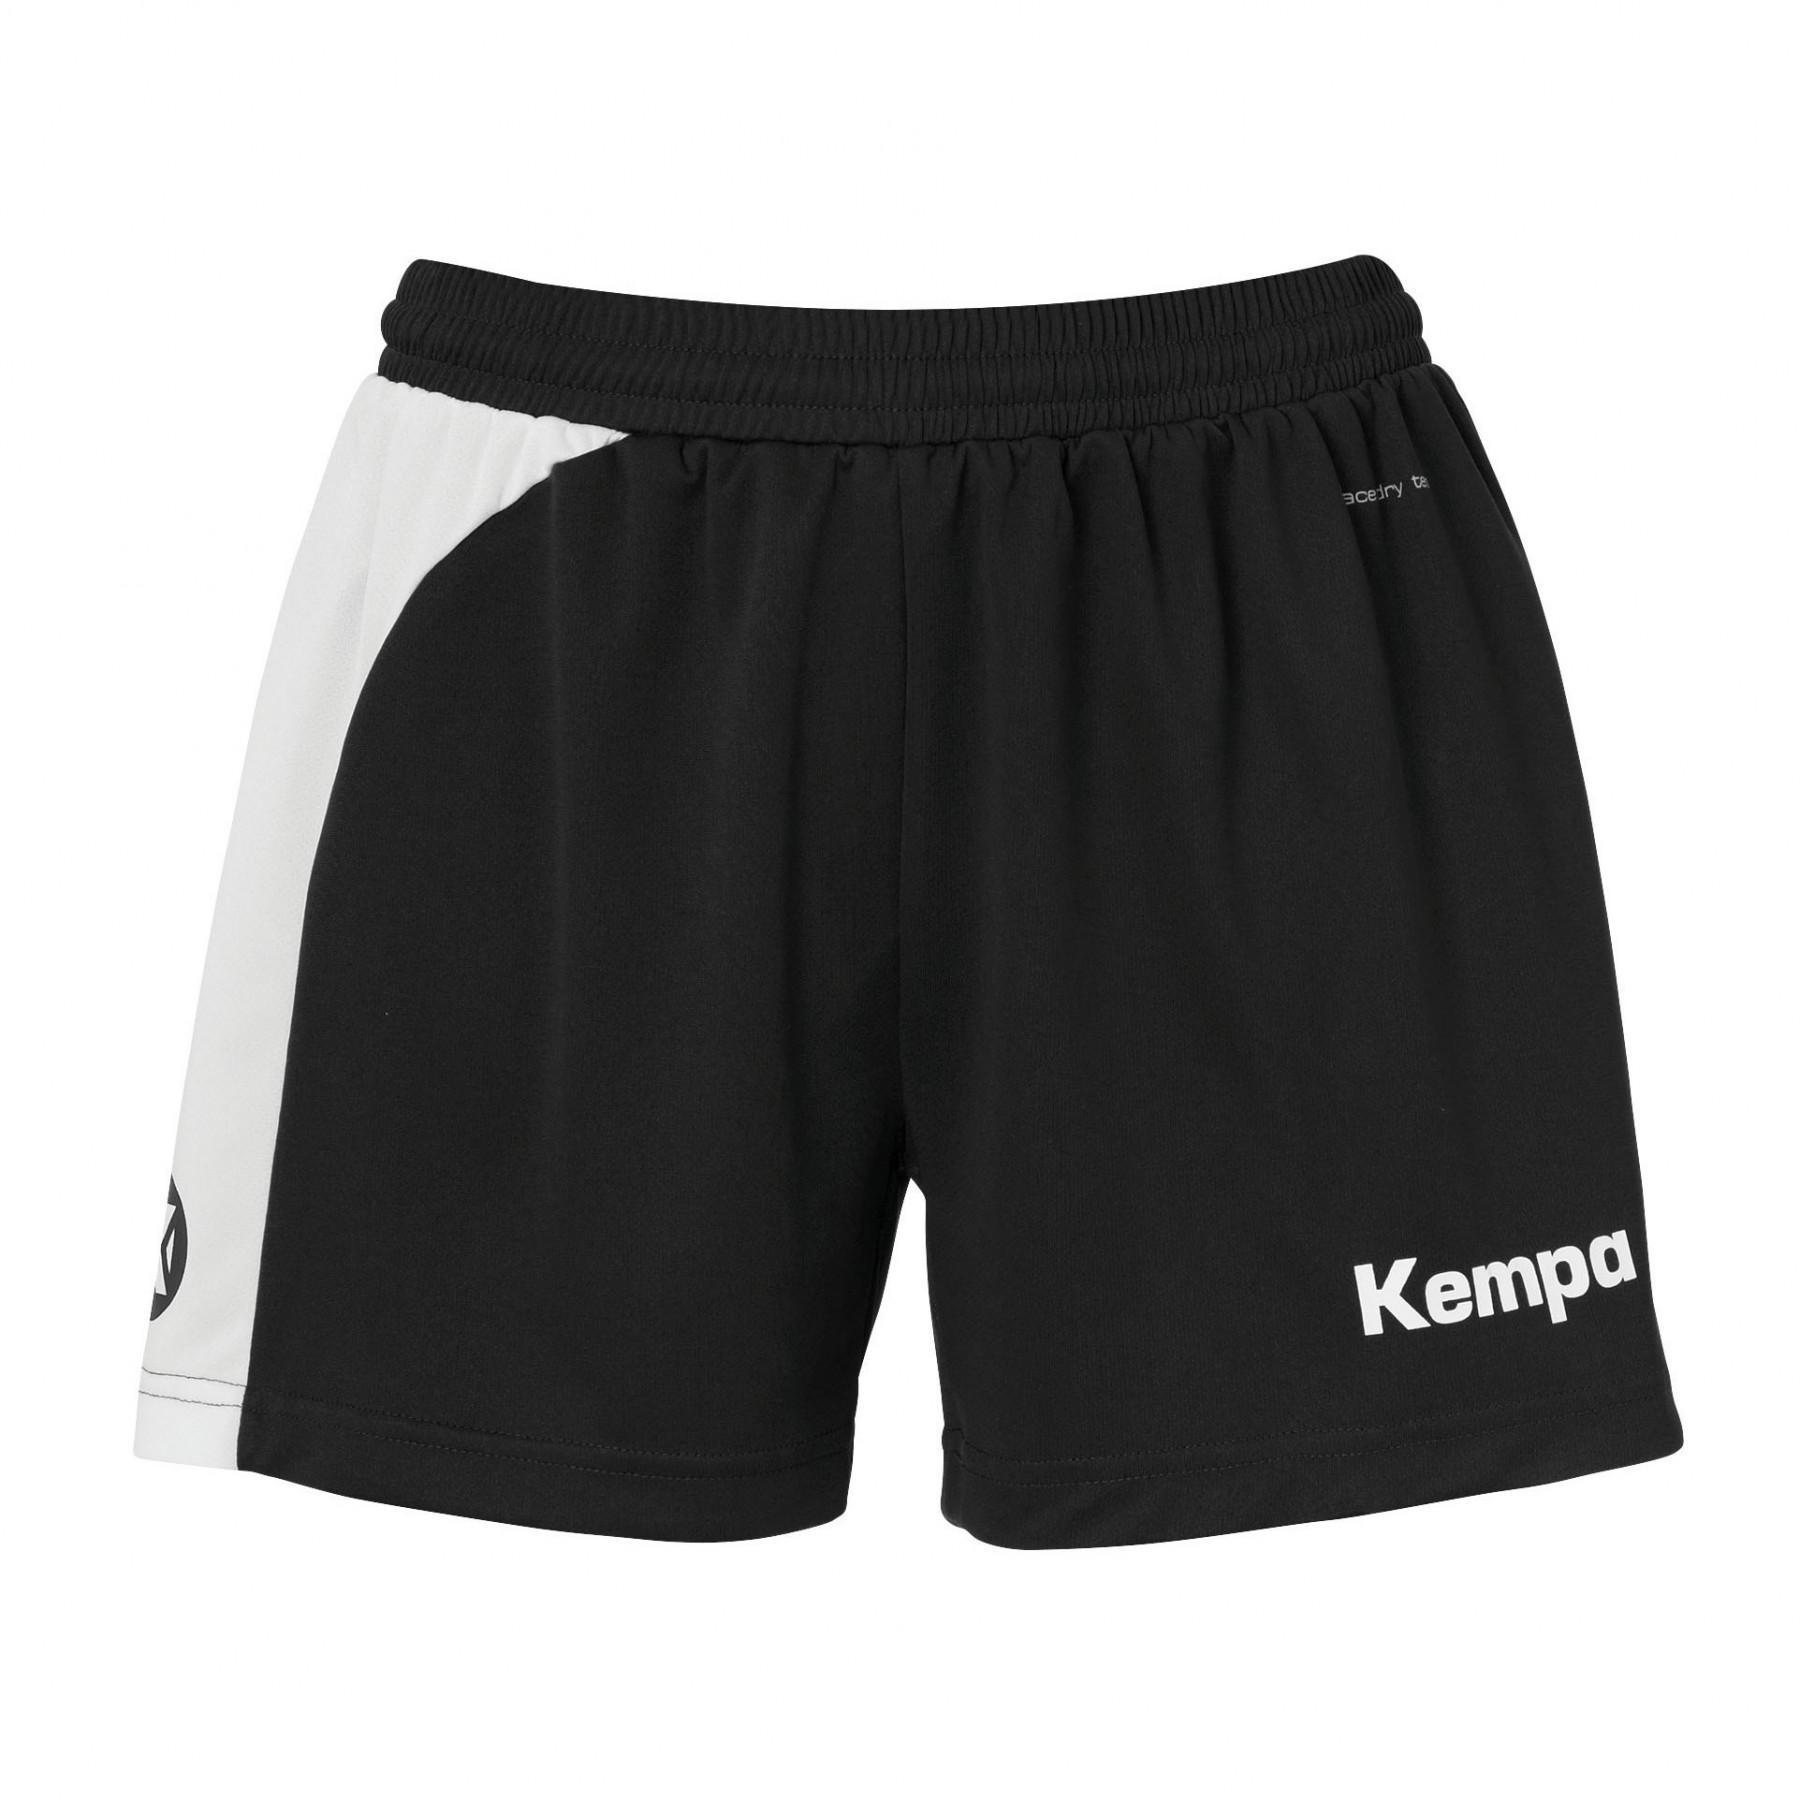 Women's shorts Kempa Peak - Kempa - Brands - Handball wear